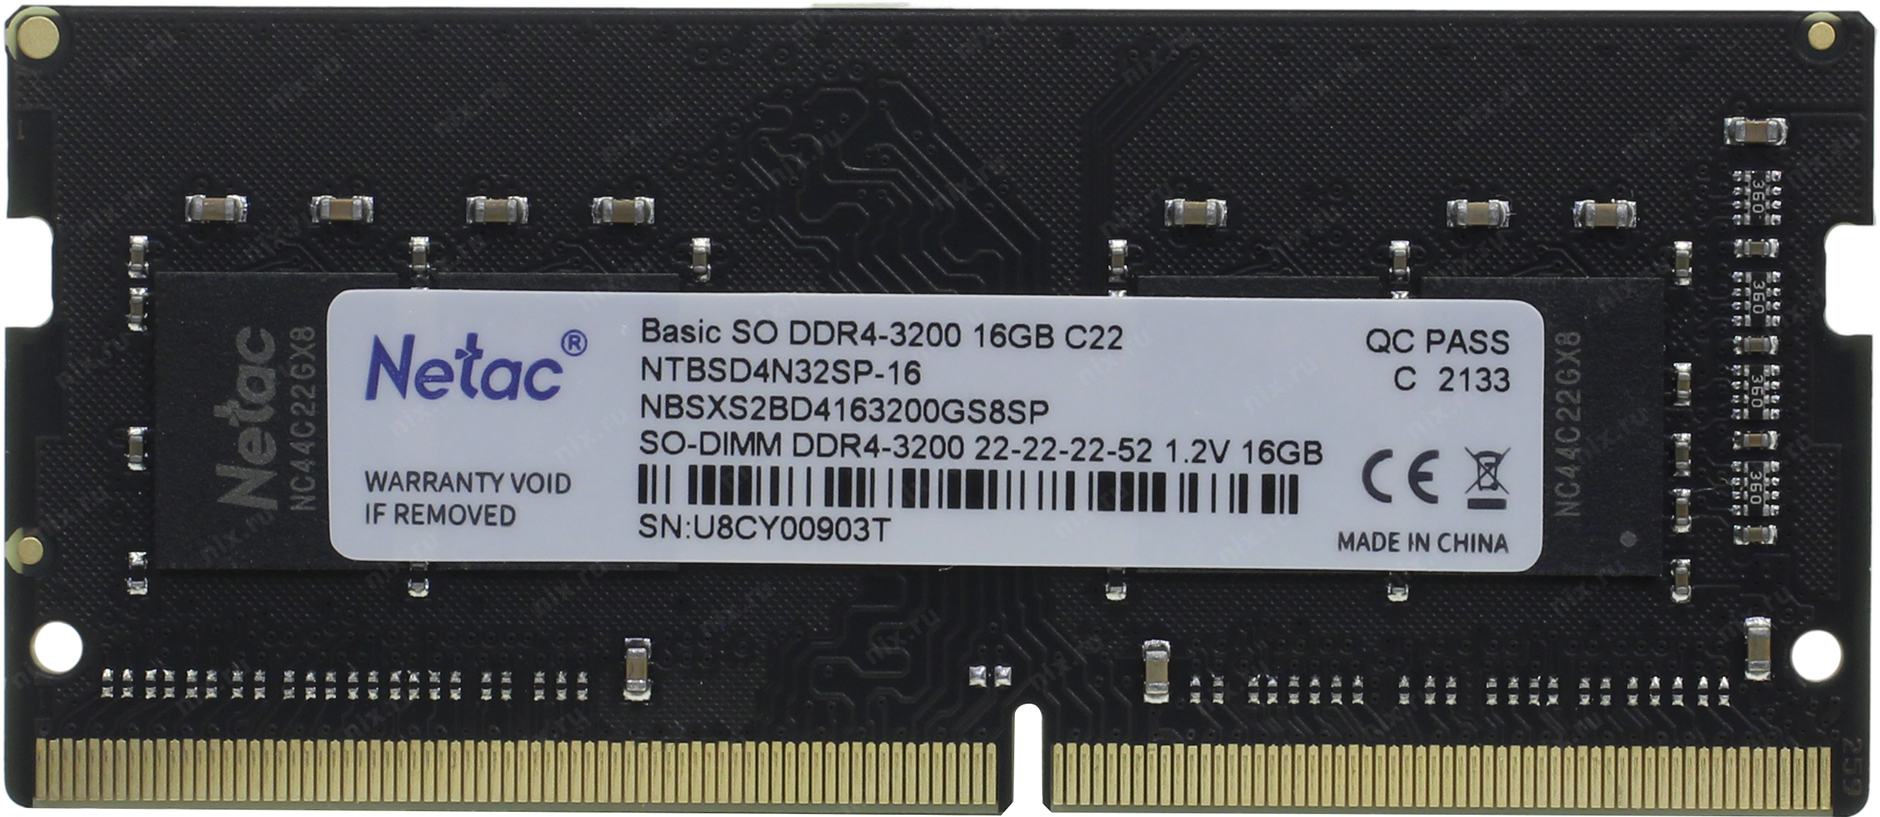 Ntbsd4p32sp 16. Netac 16 ГБ ddr4 3200 МГЦ DIMM cl16 ntsdd4p32sp-16r. Netac ddr4 16gb. Netac 8 ГБ ddr4 3200 МГЦ DIMM cl16 ntsdd4p32sp-08b. Модуль памяти Netac Basic ntbsd3n16sp-04 ddr3l - 4гб 1600, so-DIMM, Ret.